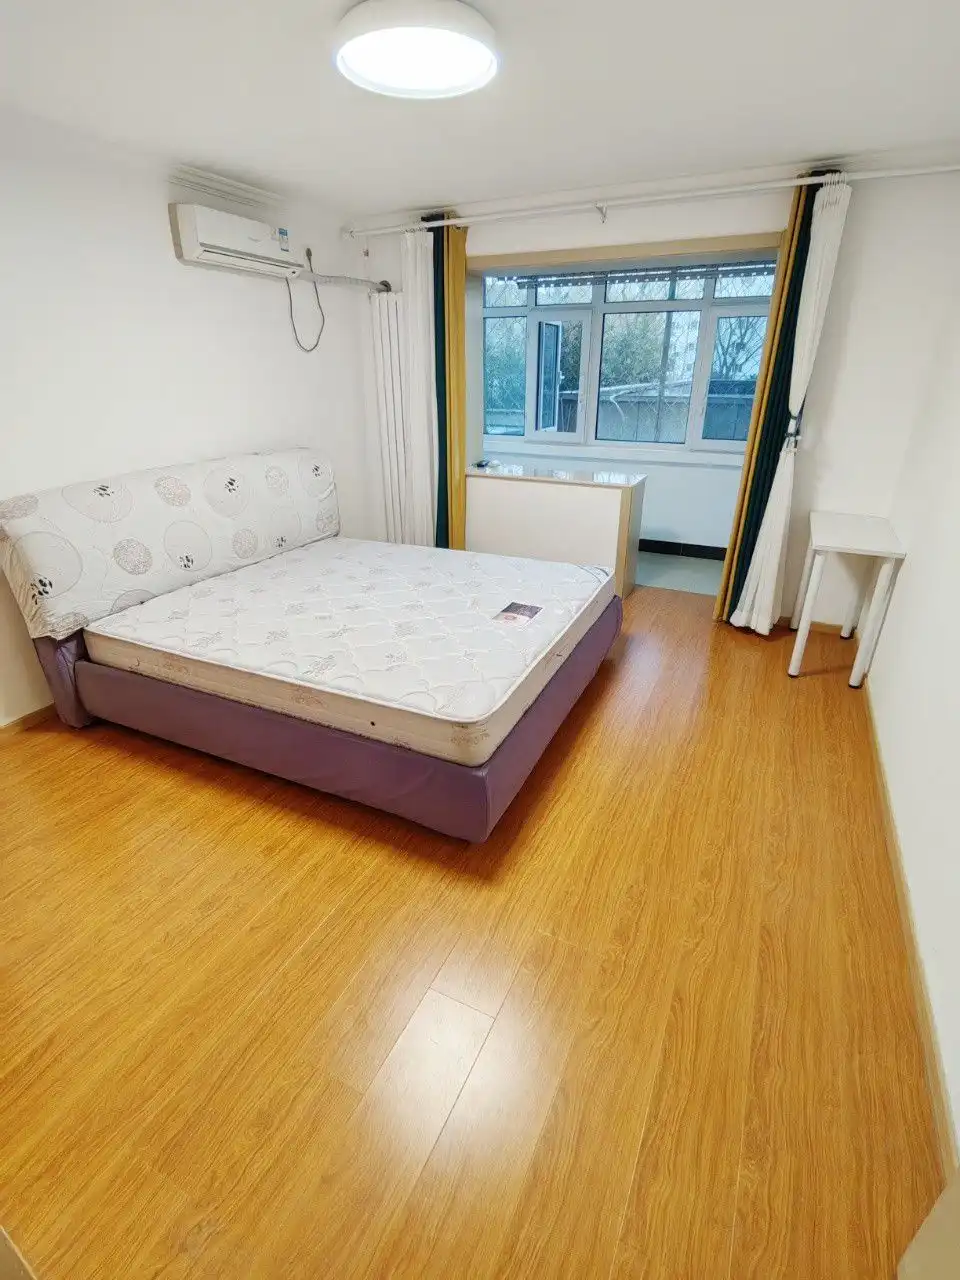  Co renting Huixinli Community · 2 bedroom master bedroom